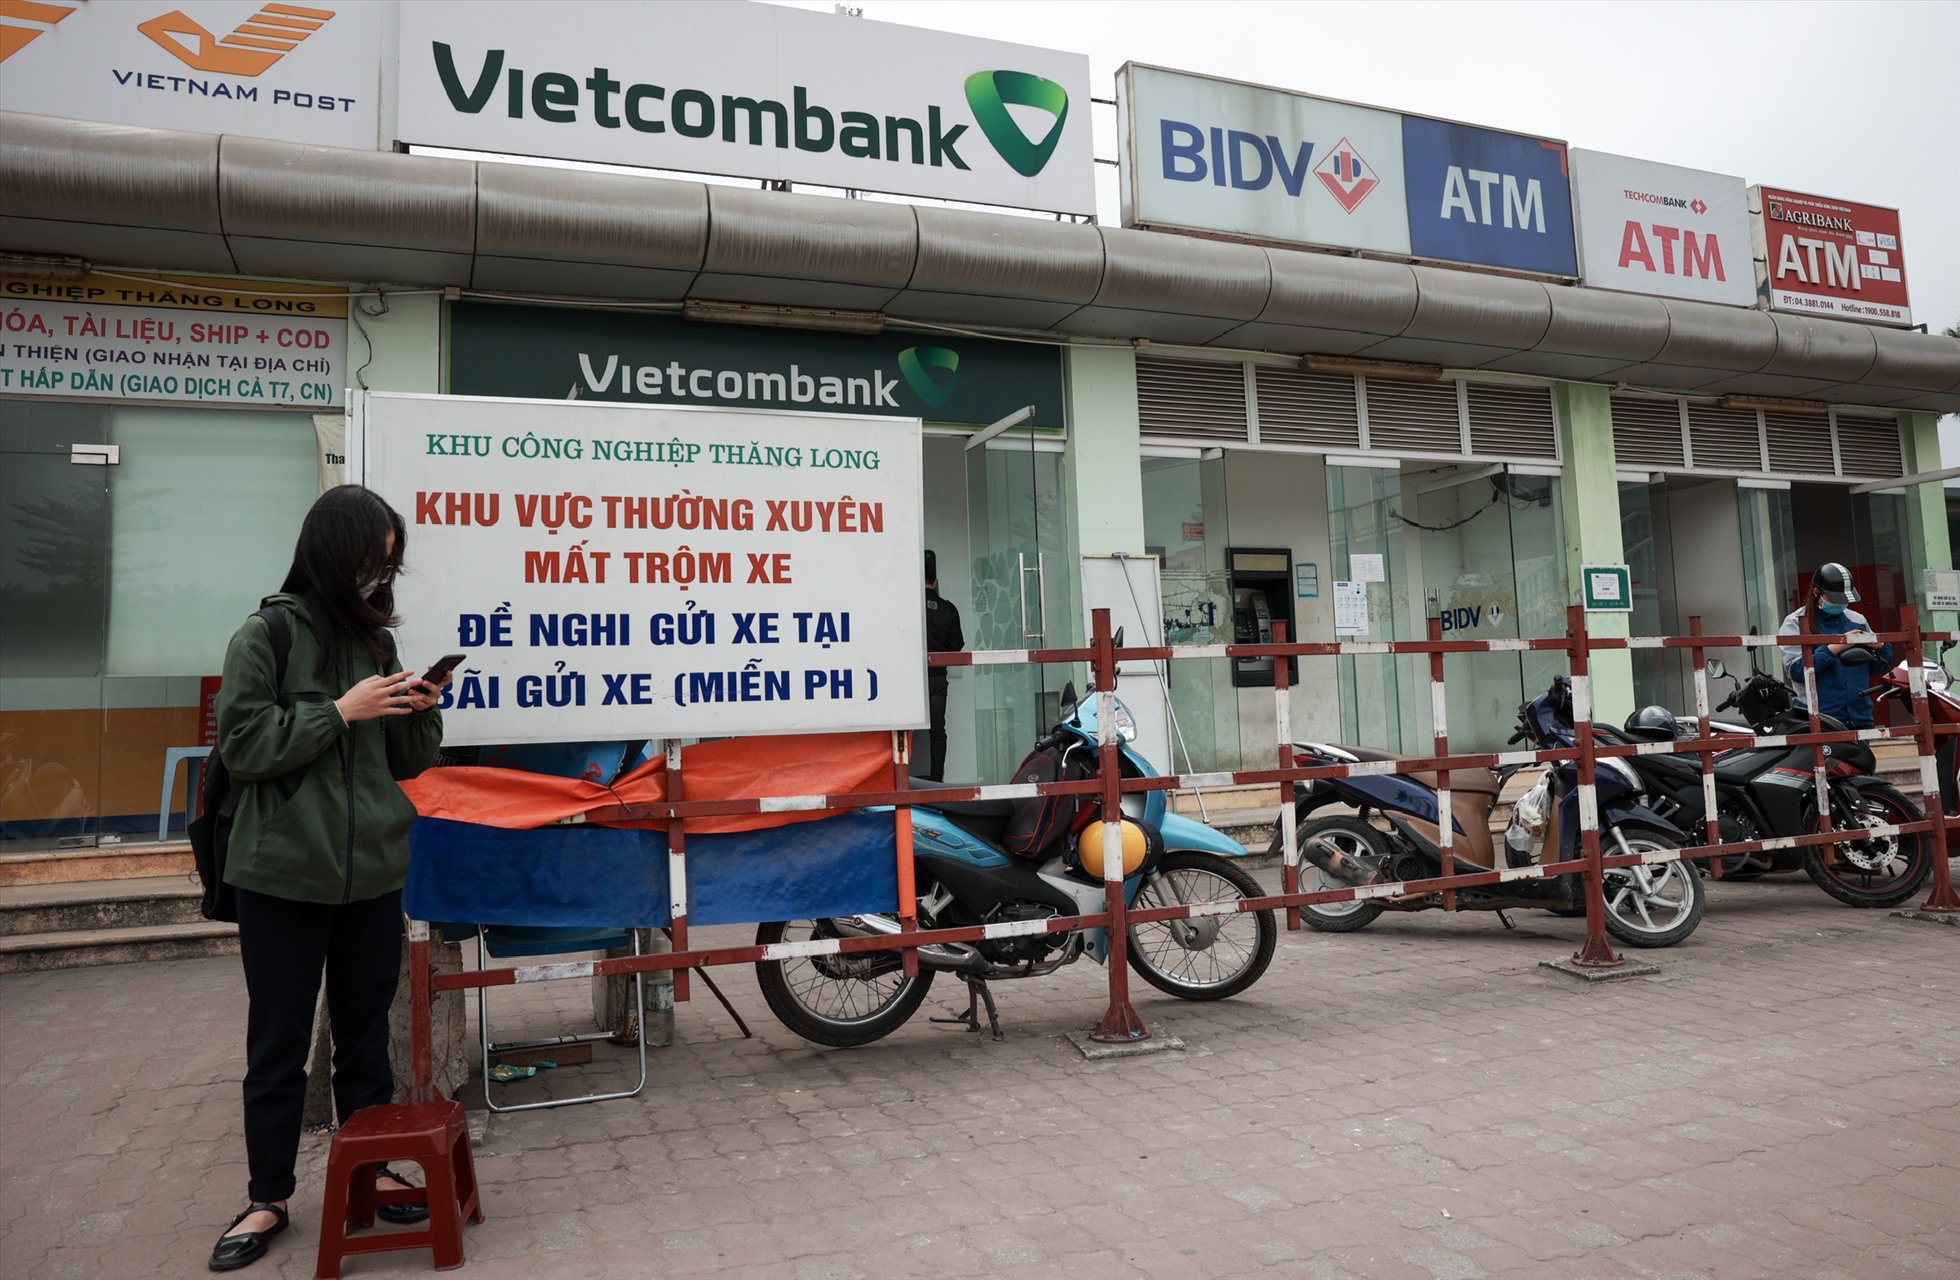 Khu vực gần cổng chính của Khu công nghiệp Thăng Long có nhiều cây ATM của nhiều ngân hàng khác nhau để phục vụ nhu cầu rút tiền của công nhân lao động. Ảnh: Hải Nguyễn